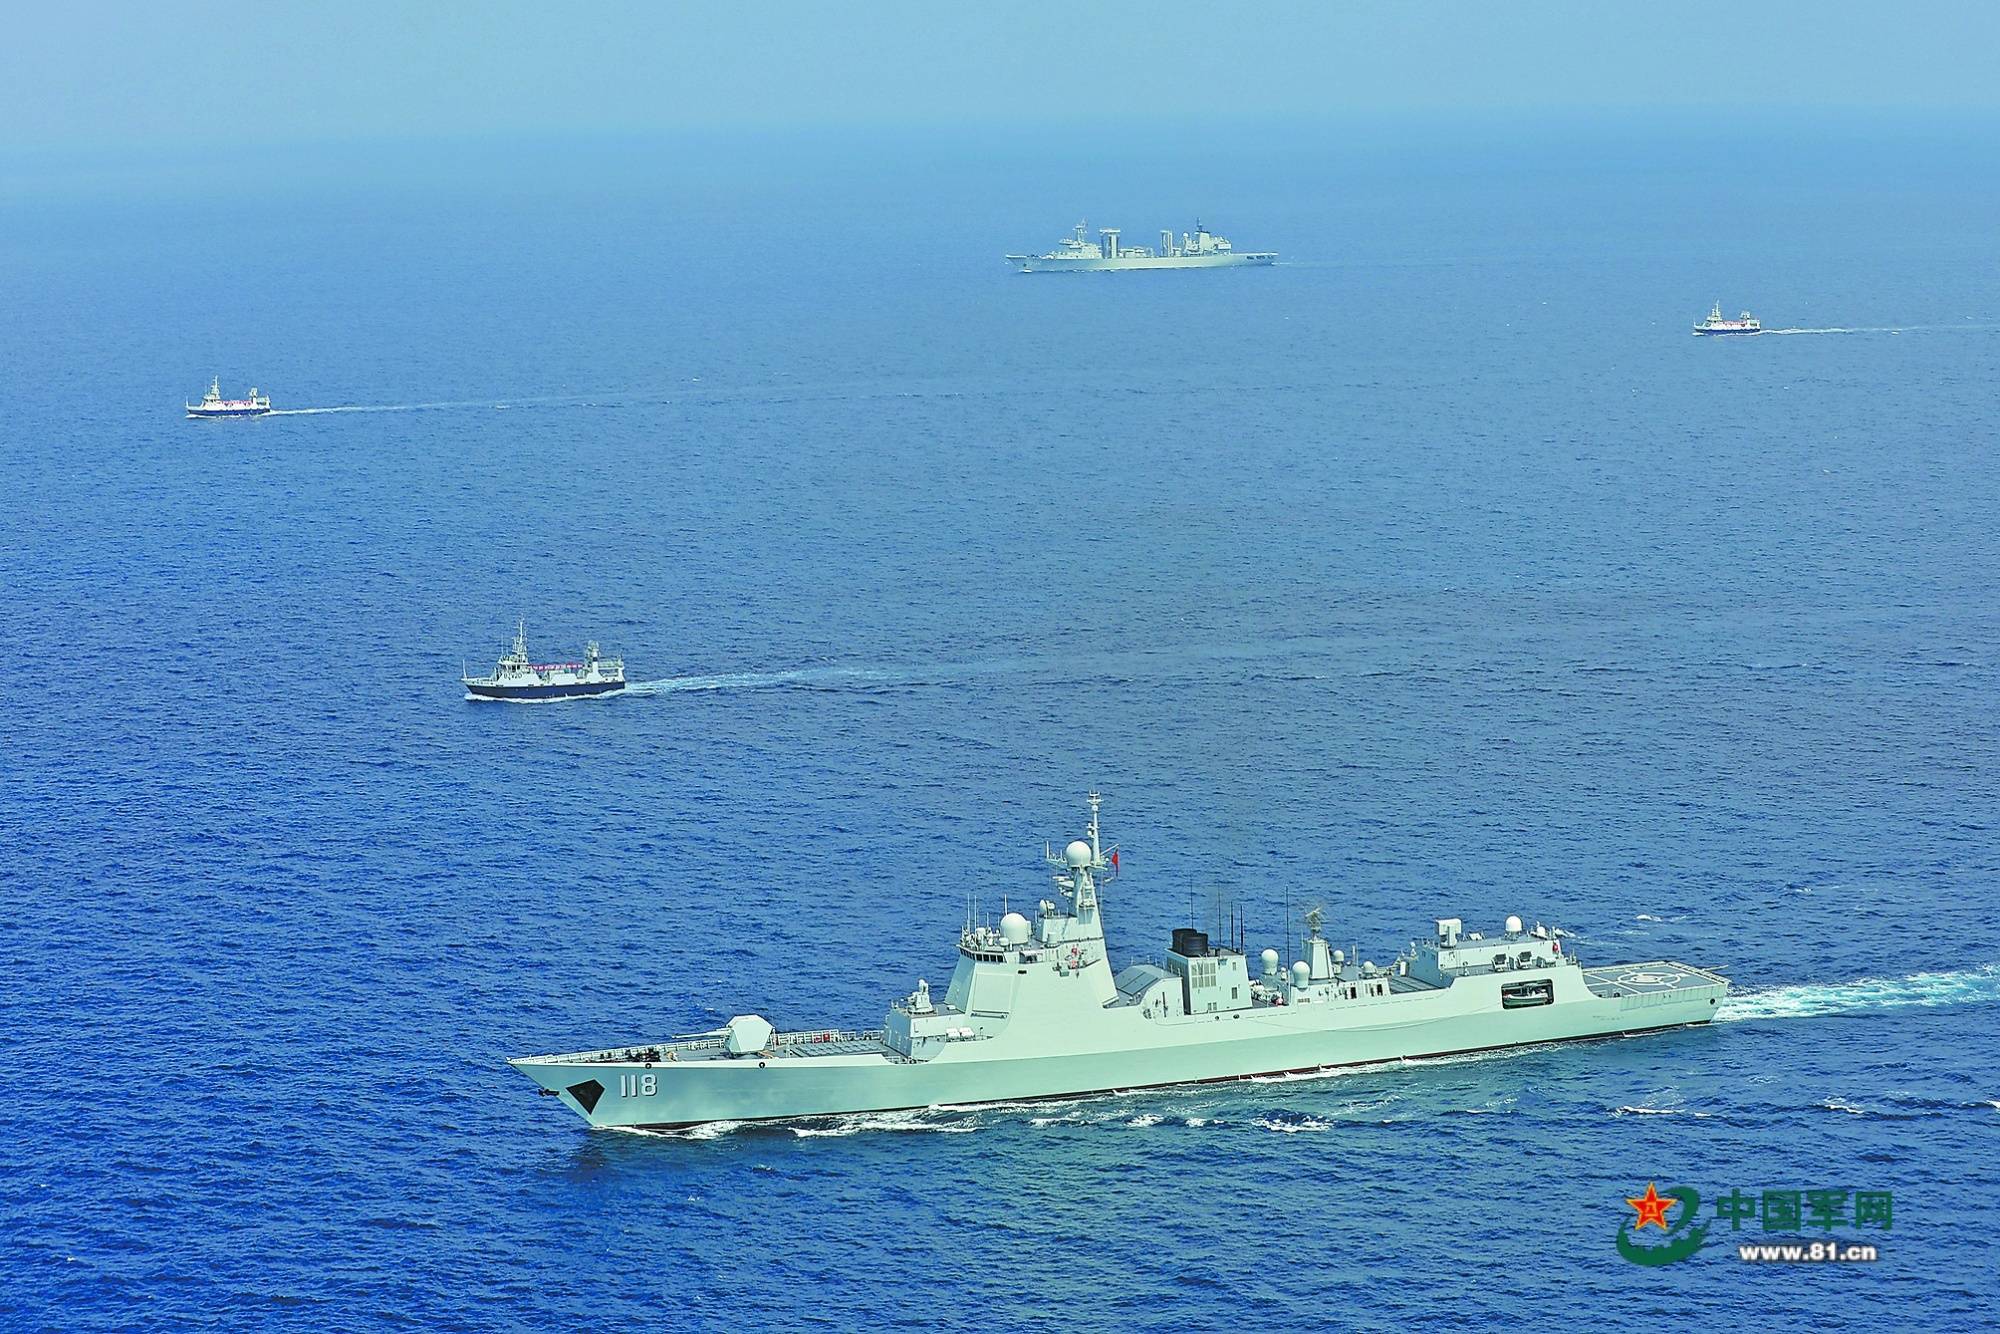 牢记使命,走向深蓝卫和平——中国海军赴亚丁湾,索马里海域护航15周年